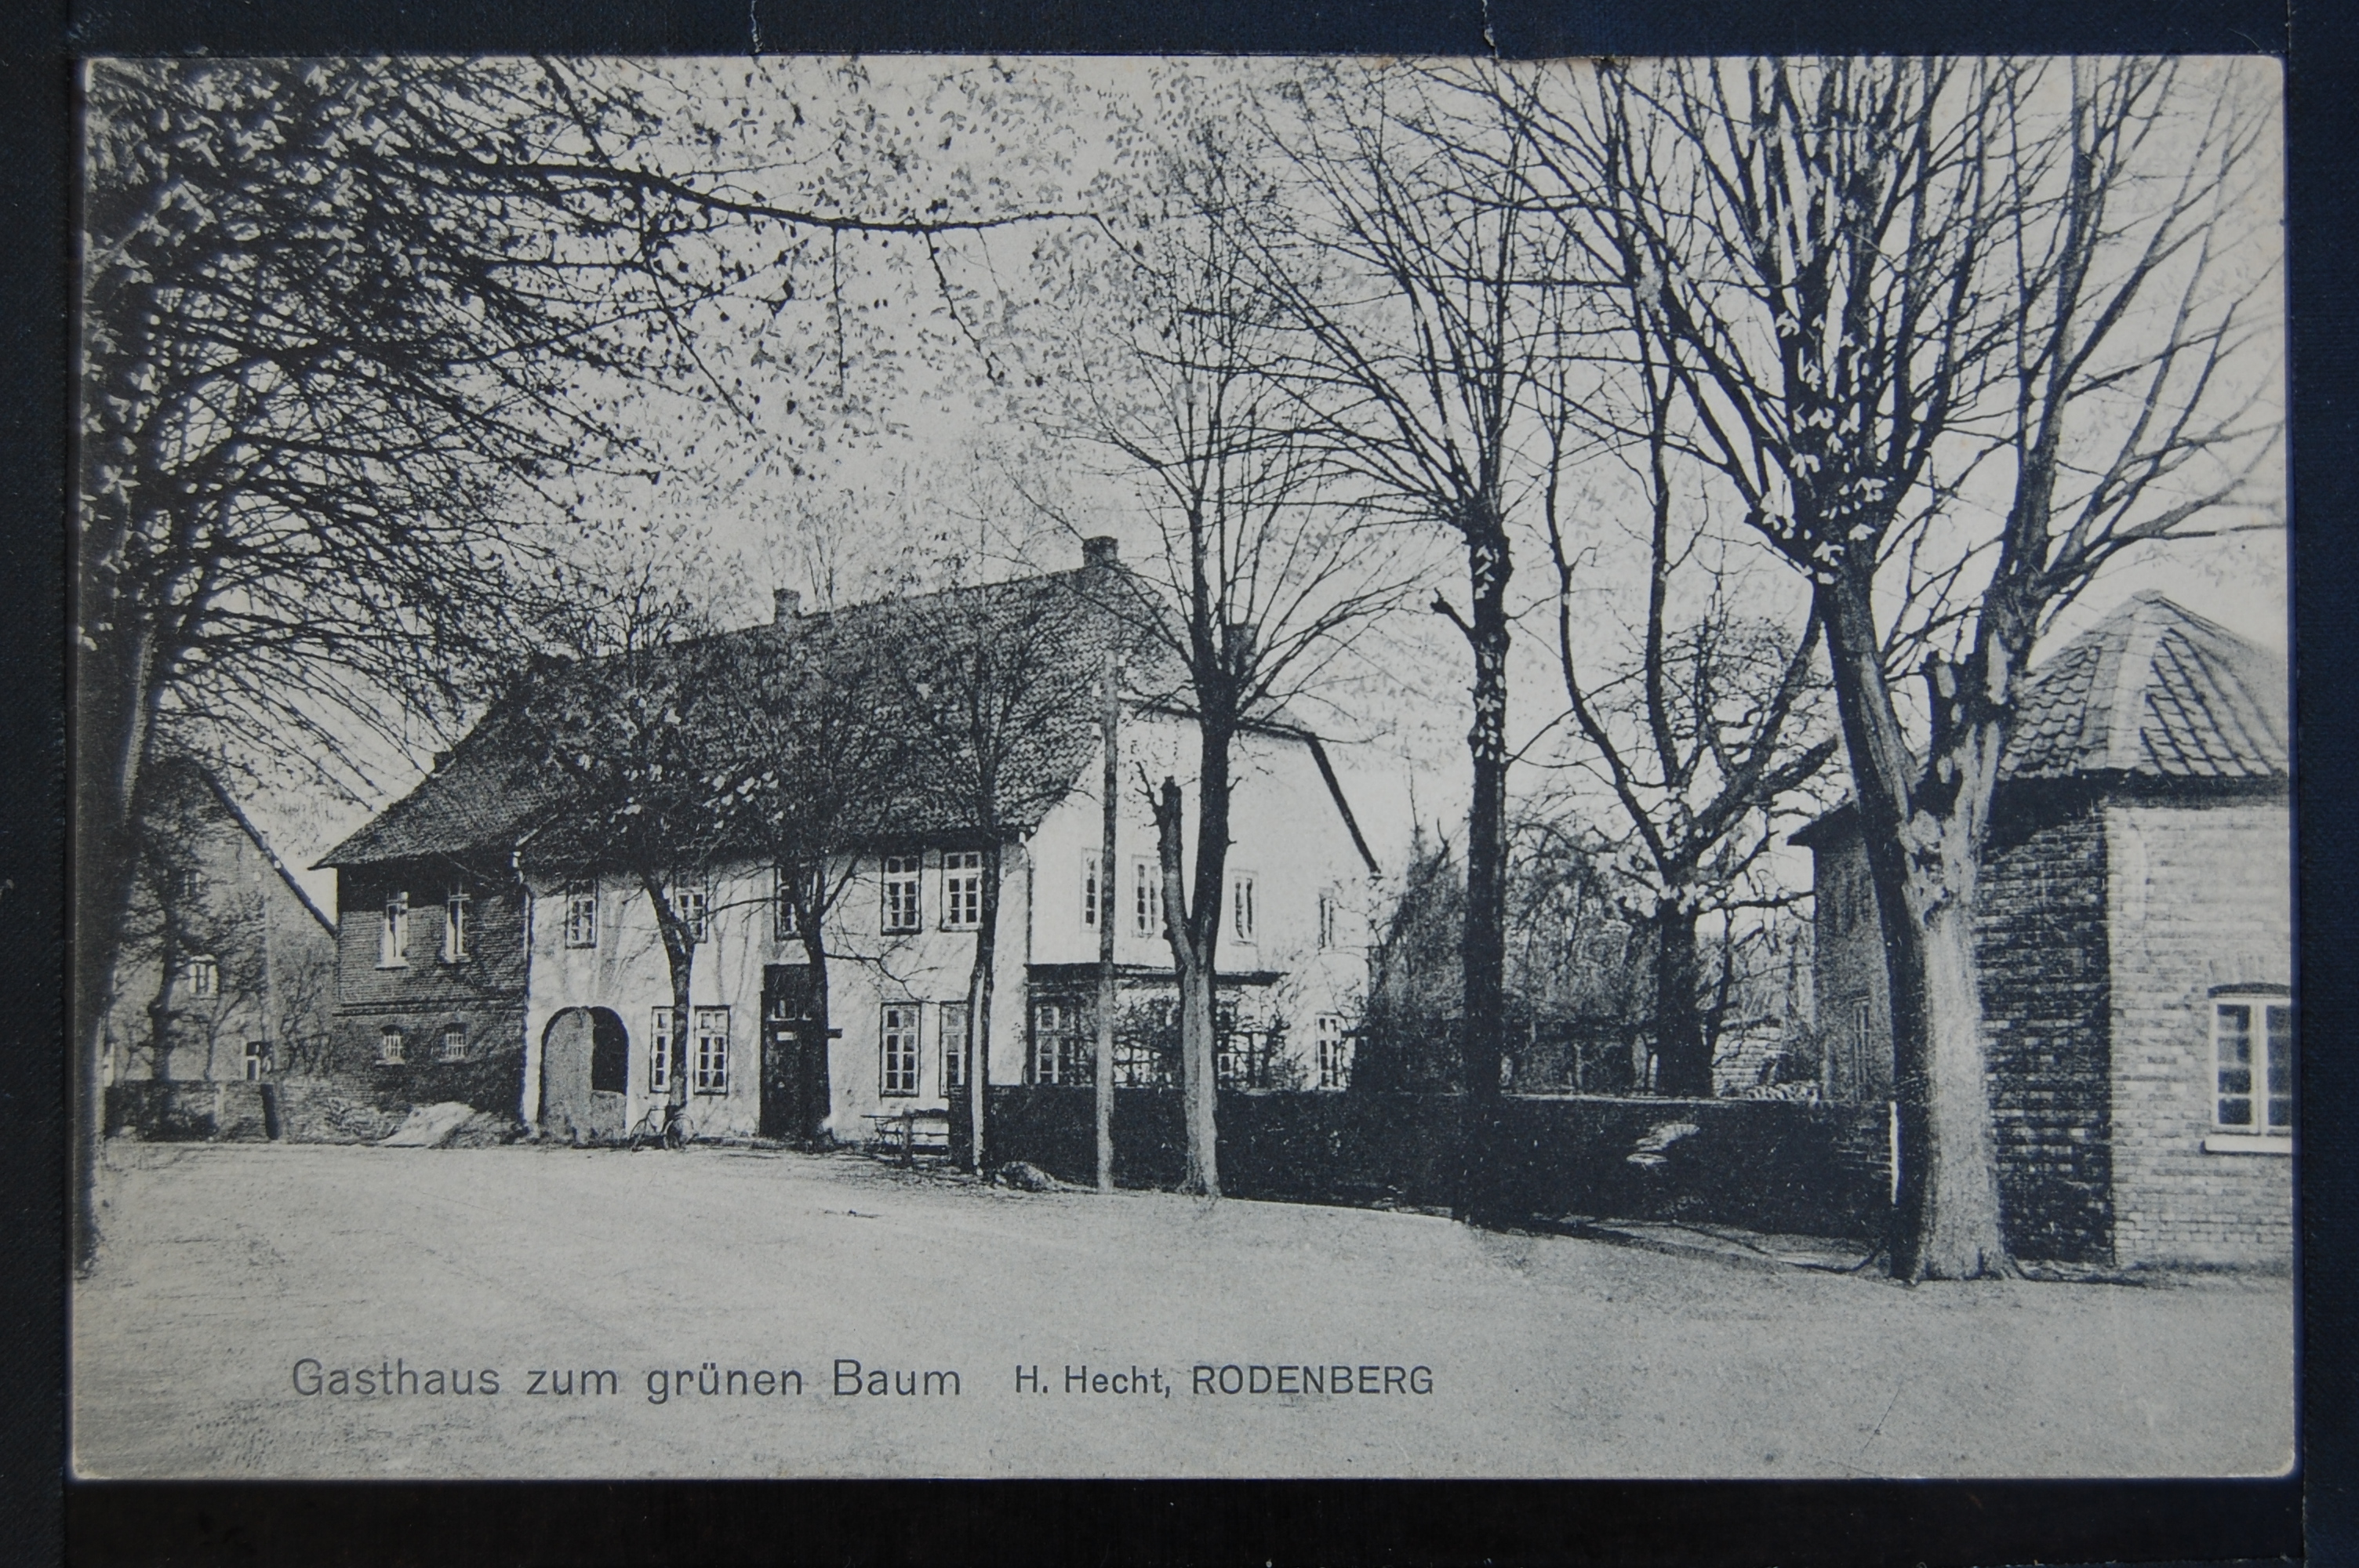 AK Rodenberg, Gasthaus zum grünen Baum 1912 (Museumslandschaft Amt Rodenberg e.V. CC BY-NC-SA)